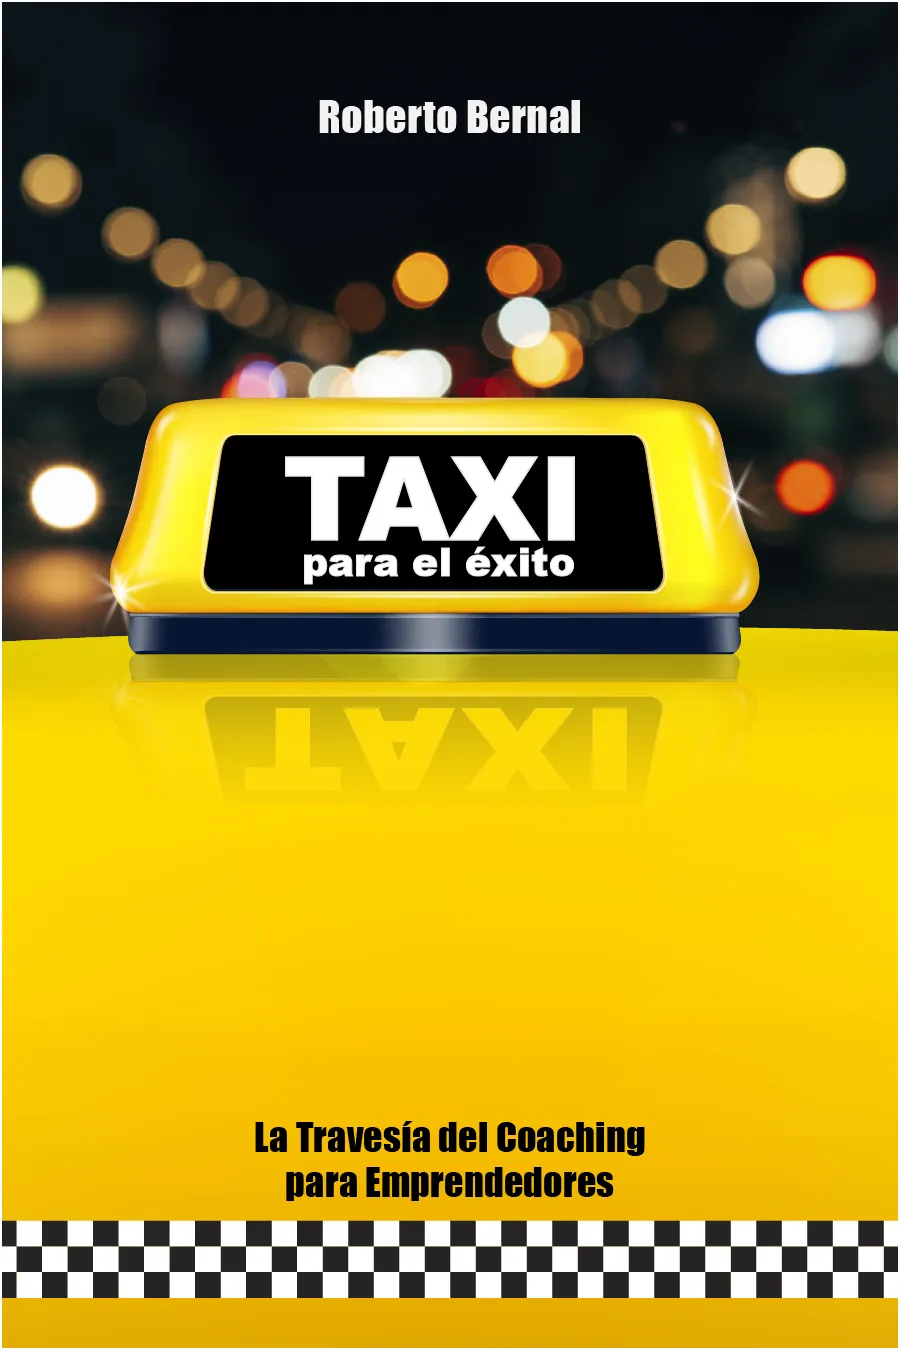 Imagen de la portada del libro Taxi para el Éxito.